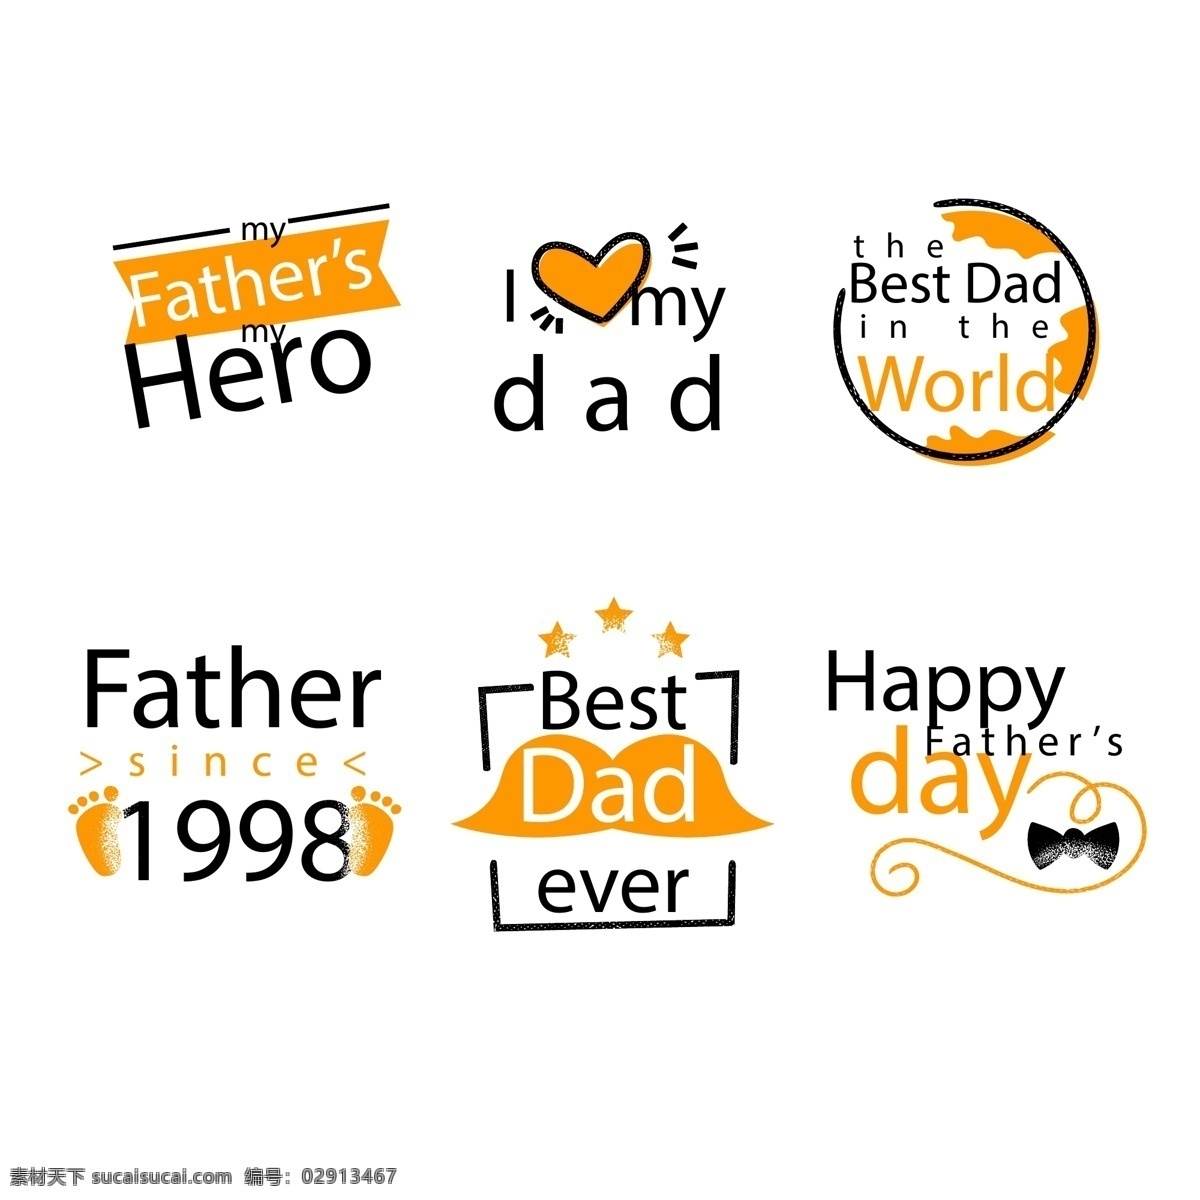 父亲节 橙色 可爱 图标 父亲节设计 父亲节图标 父情 父亲节矢量图 父亲节橙色